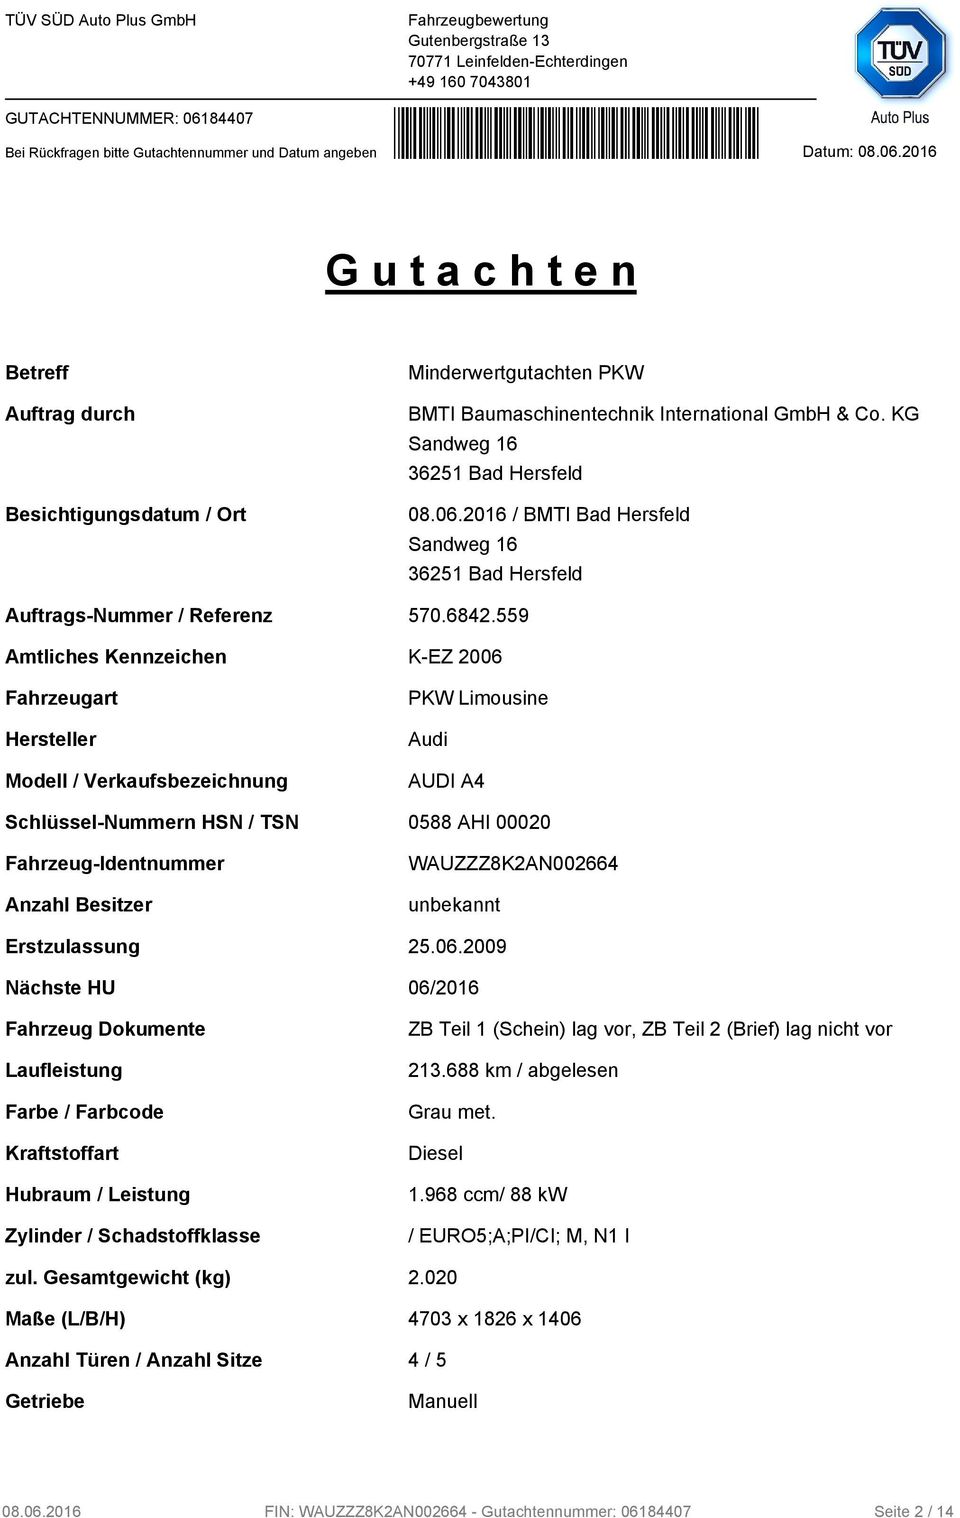 559 Amtliches Kennzeichen K-EZ 2006 Fahrzeugart Hersteller Modell / Verkaufsbezeichnung PKW Limousine Audi AUDI A4 Schlüssel-Nummern HSN / TSN 0588 AHI 00020 Fahrzeug-Identnummer Anzahl Besitzer